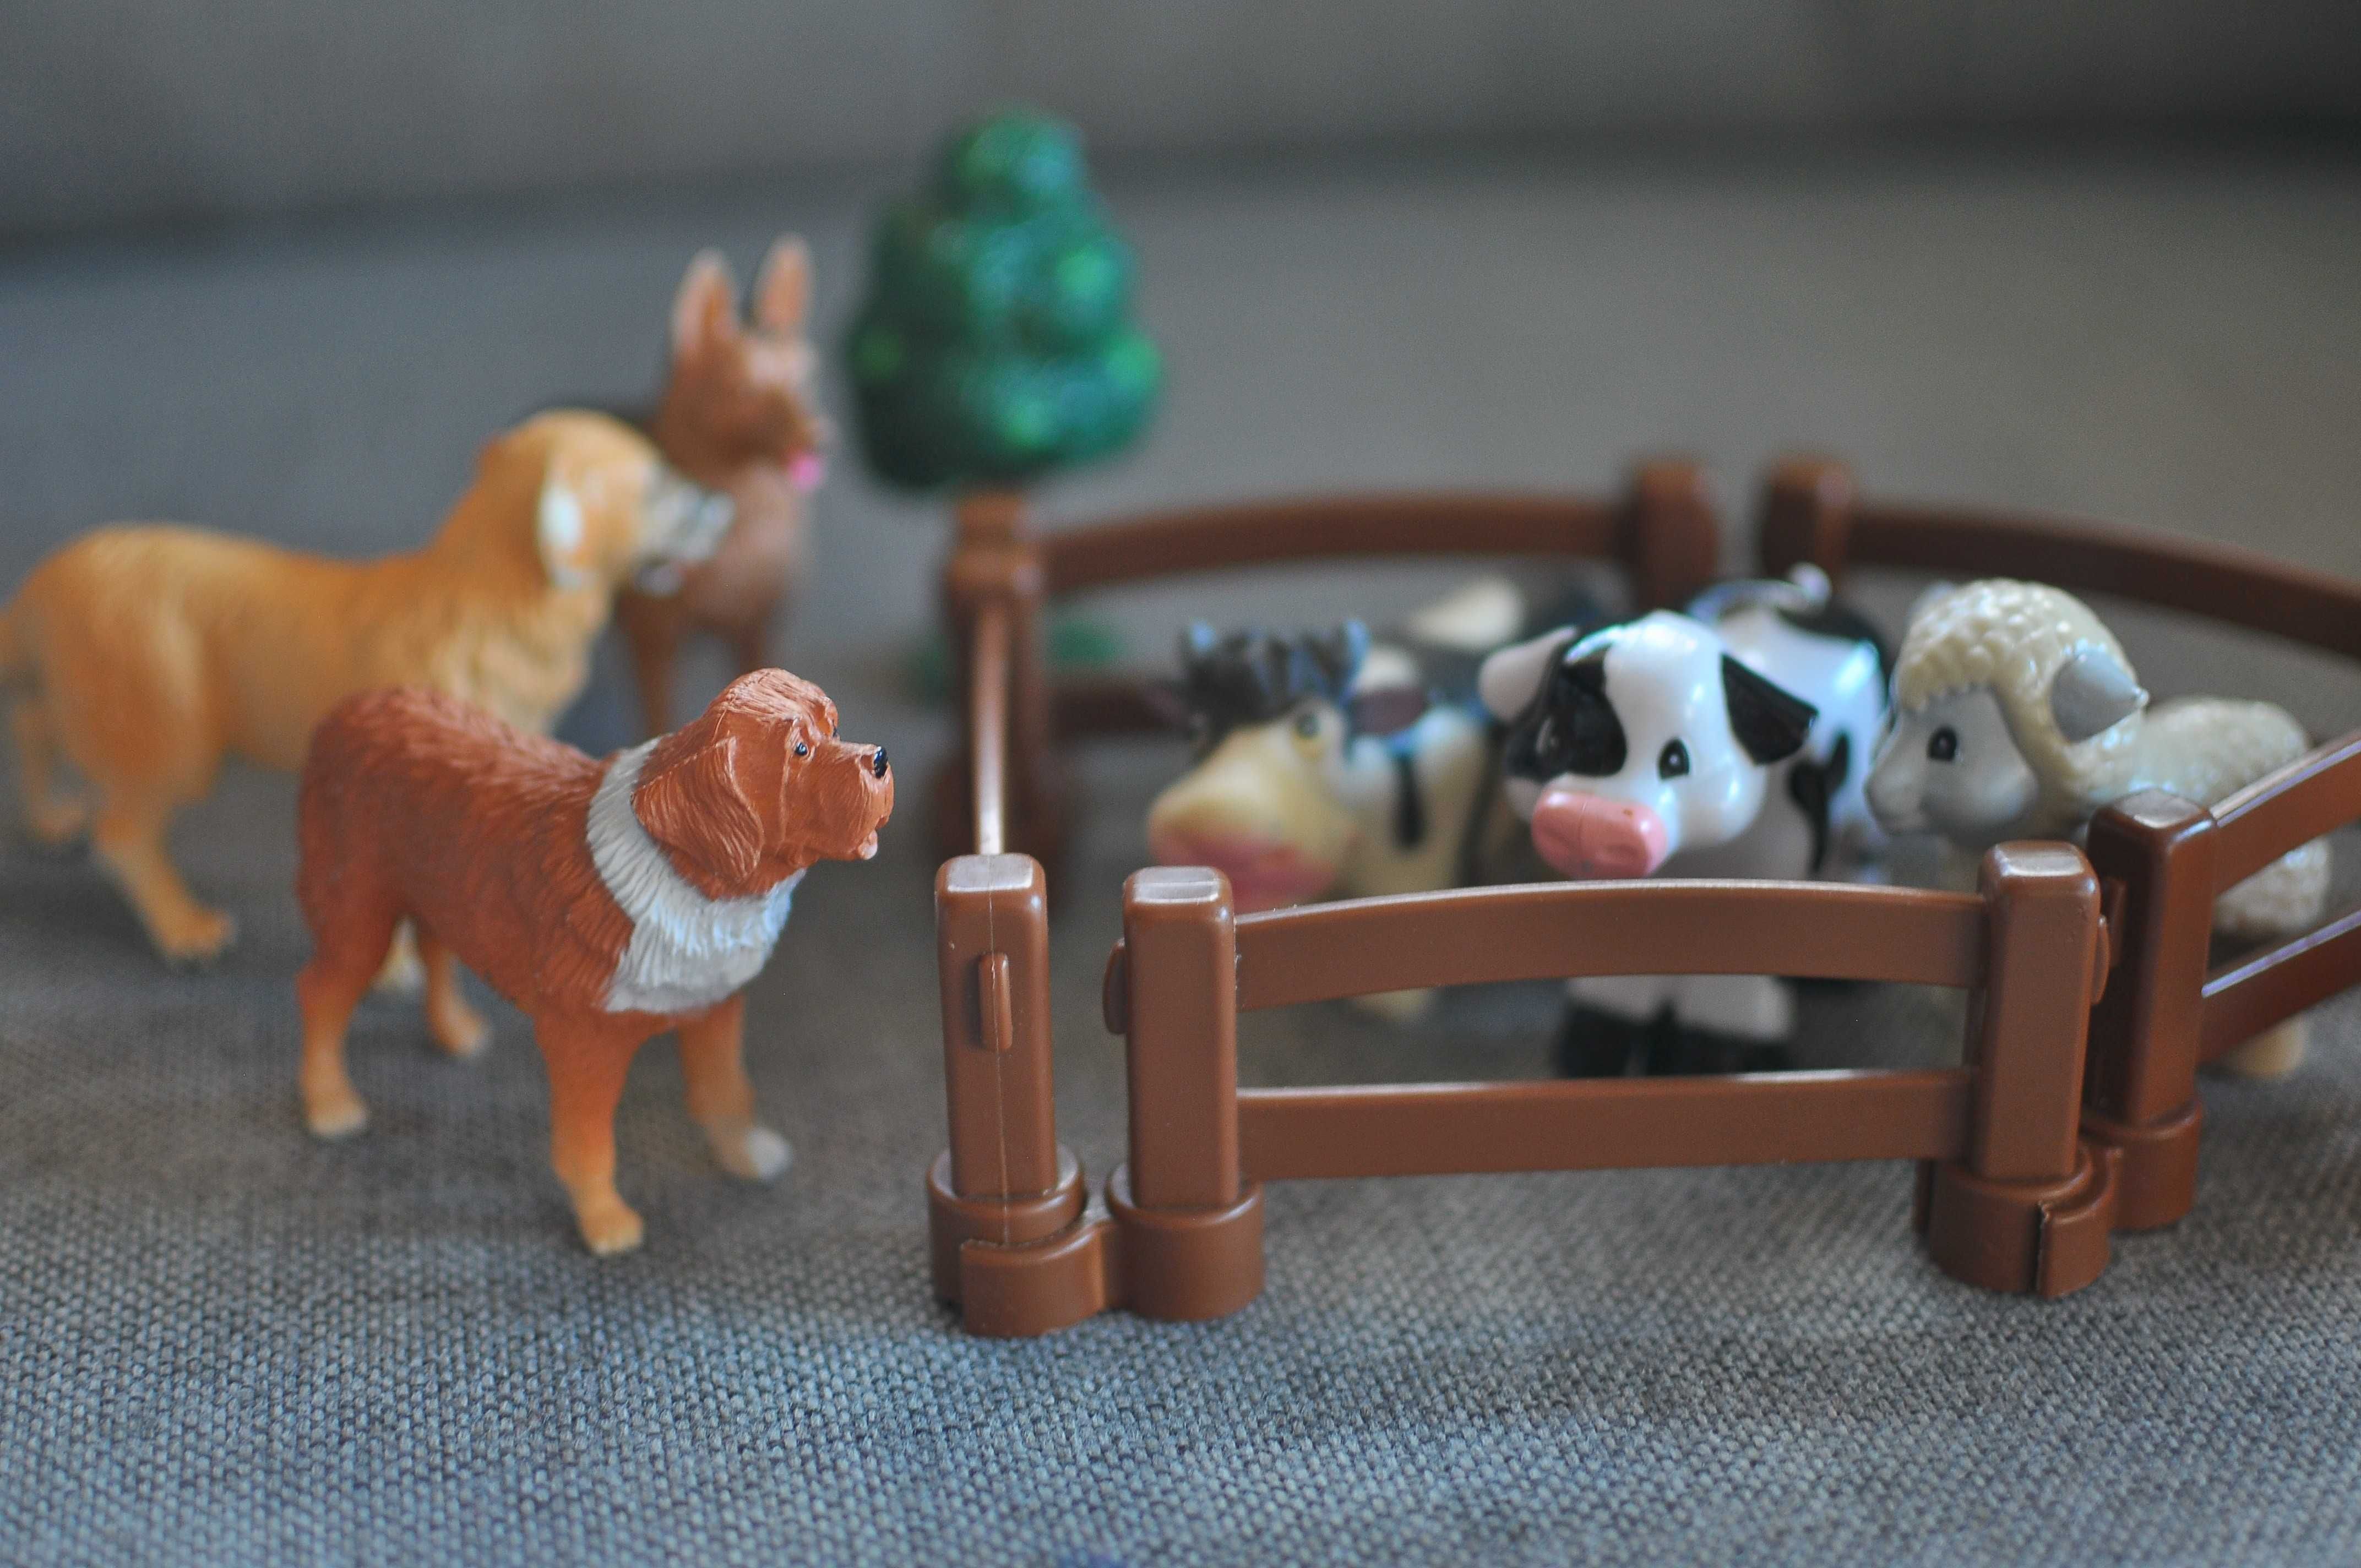 # Zwierzęta - Pies, krowa, owca - zabawki - Pieski, figurki dla dzieci